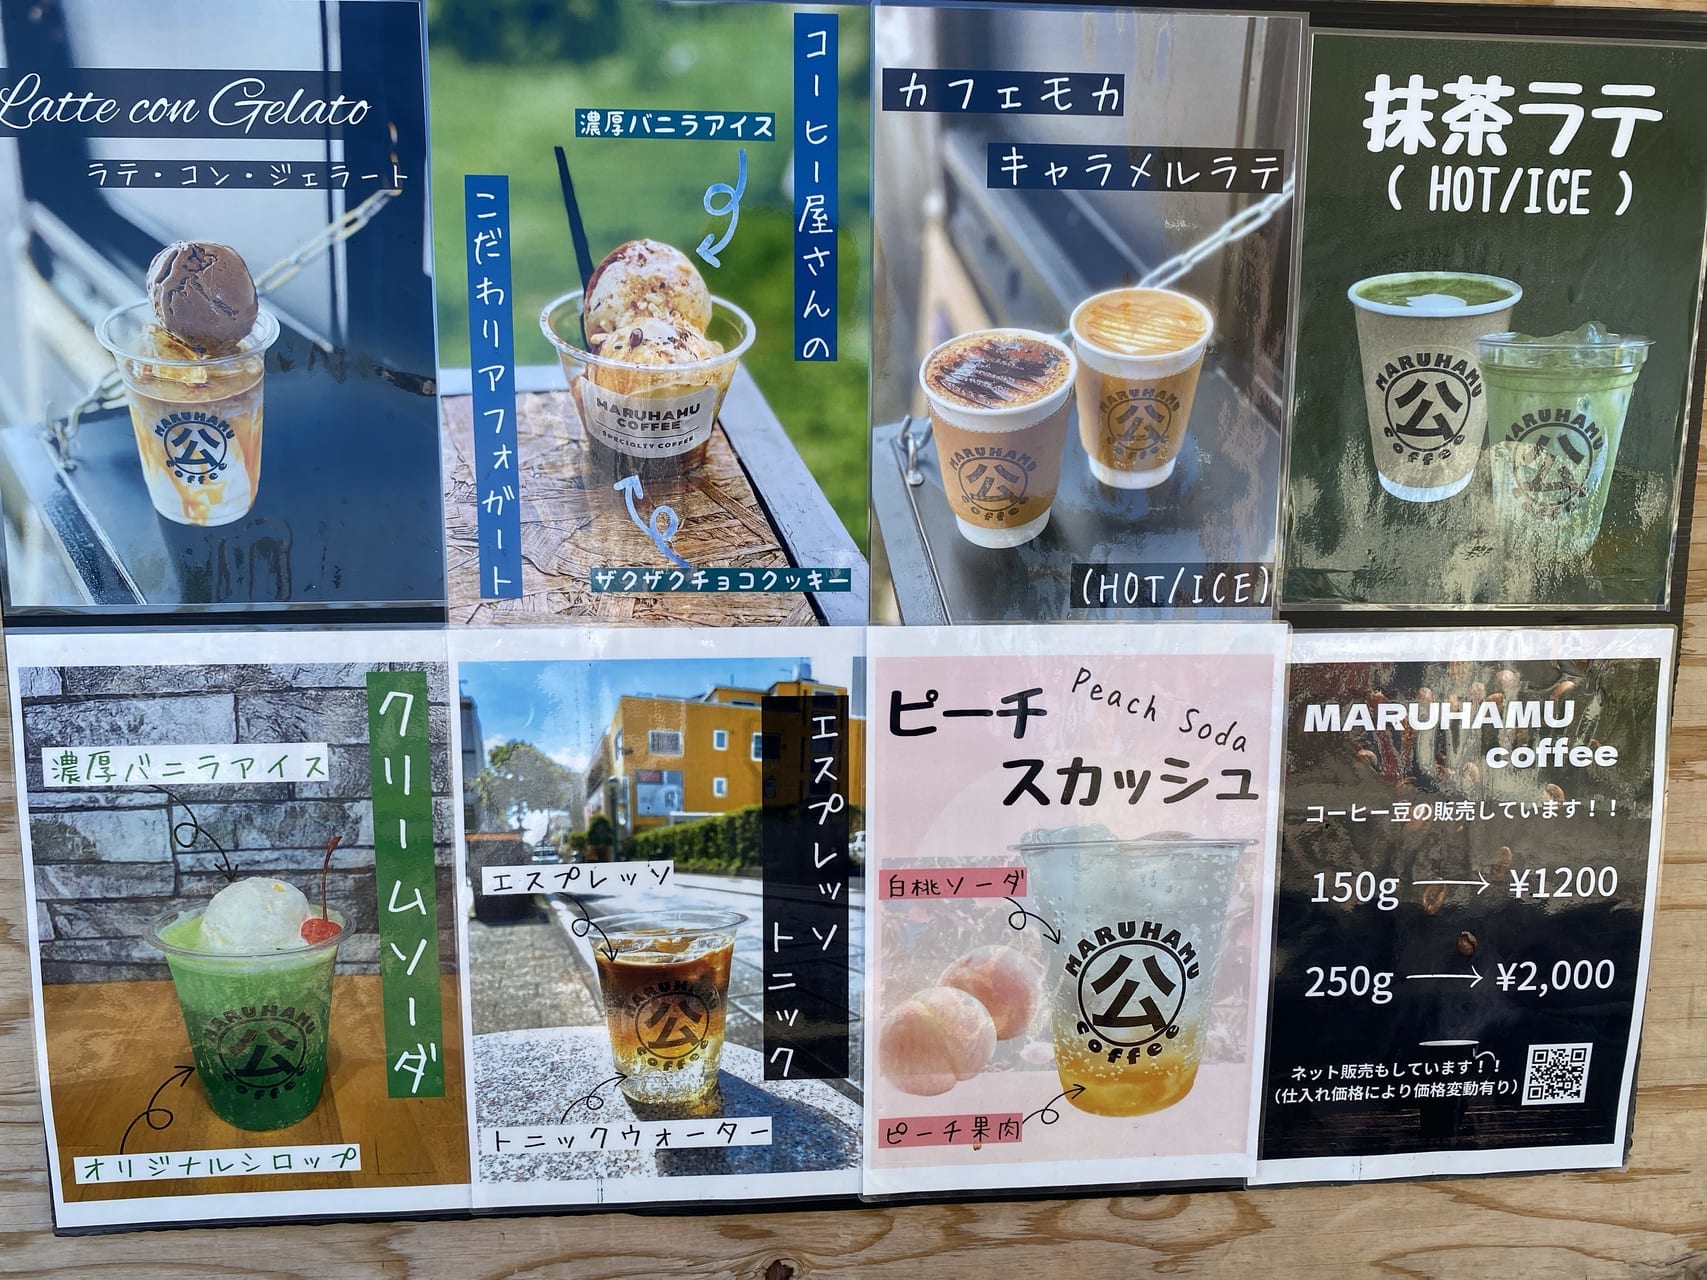 宮崎キッチンカー 店舗のない移動カフェ マルハムコーヒー2